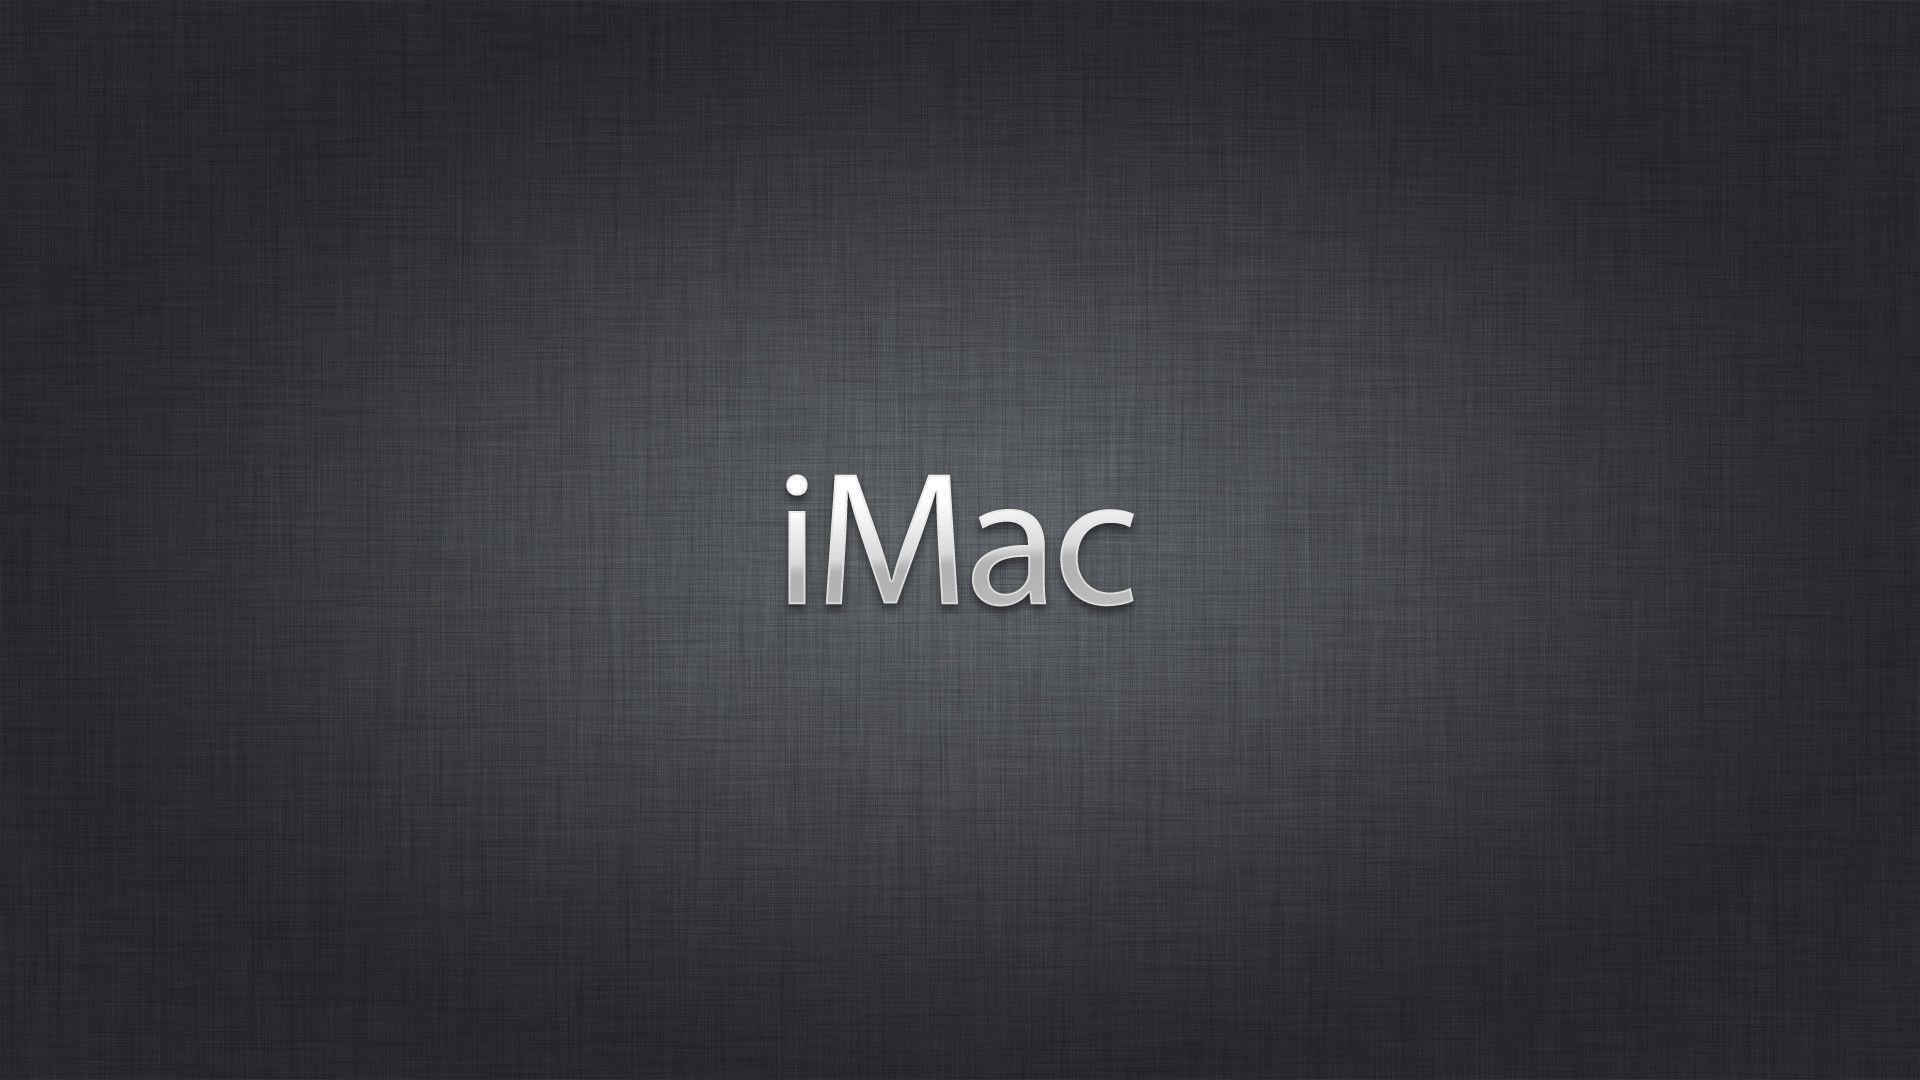 IMac HD Wallpaper For Desktop Wallpaper. ForWallpaper